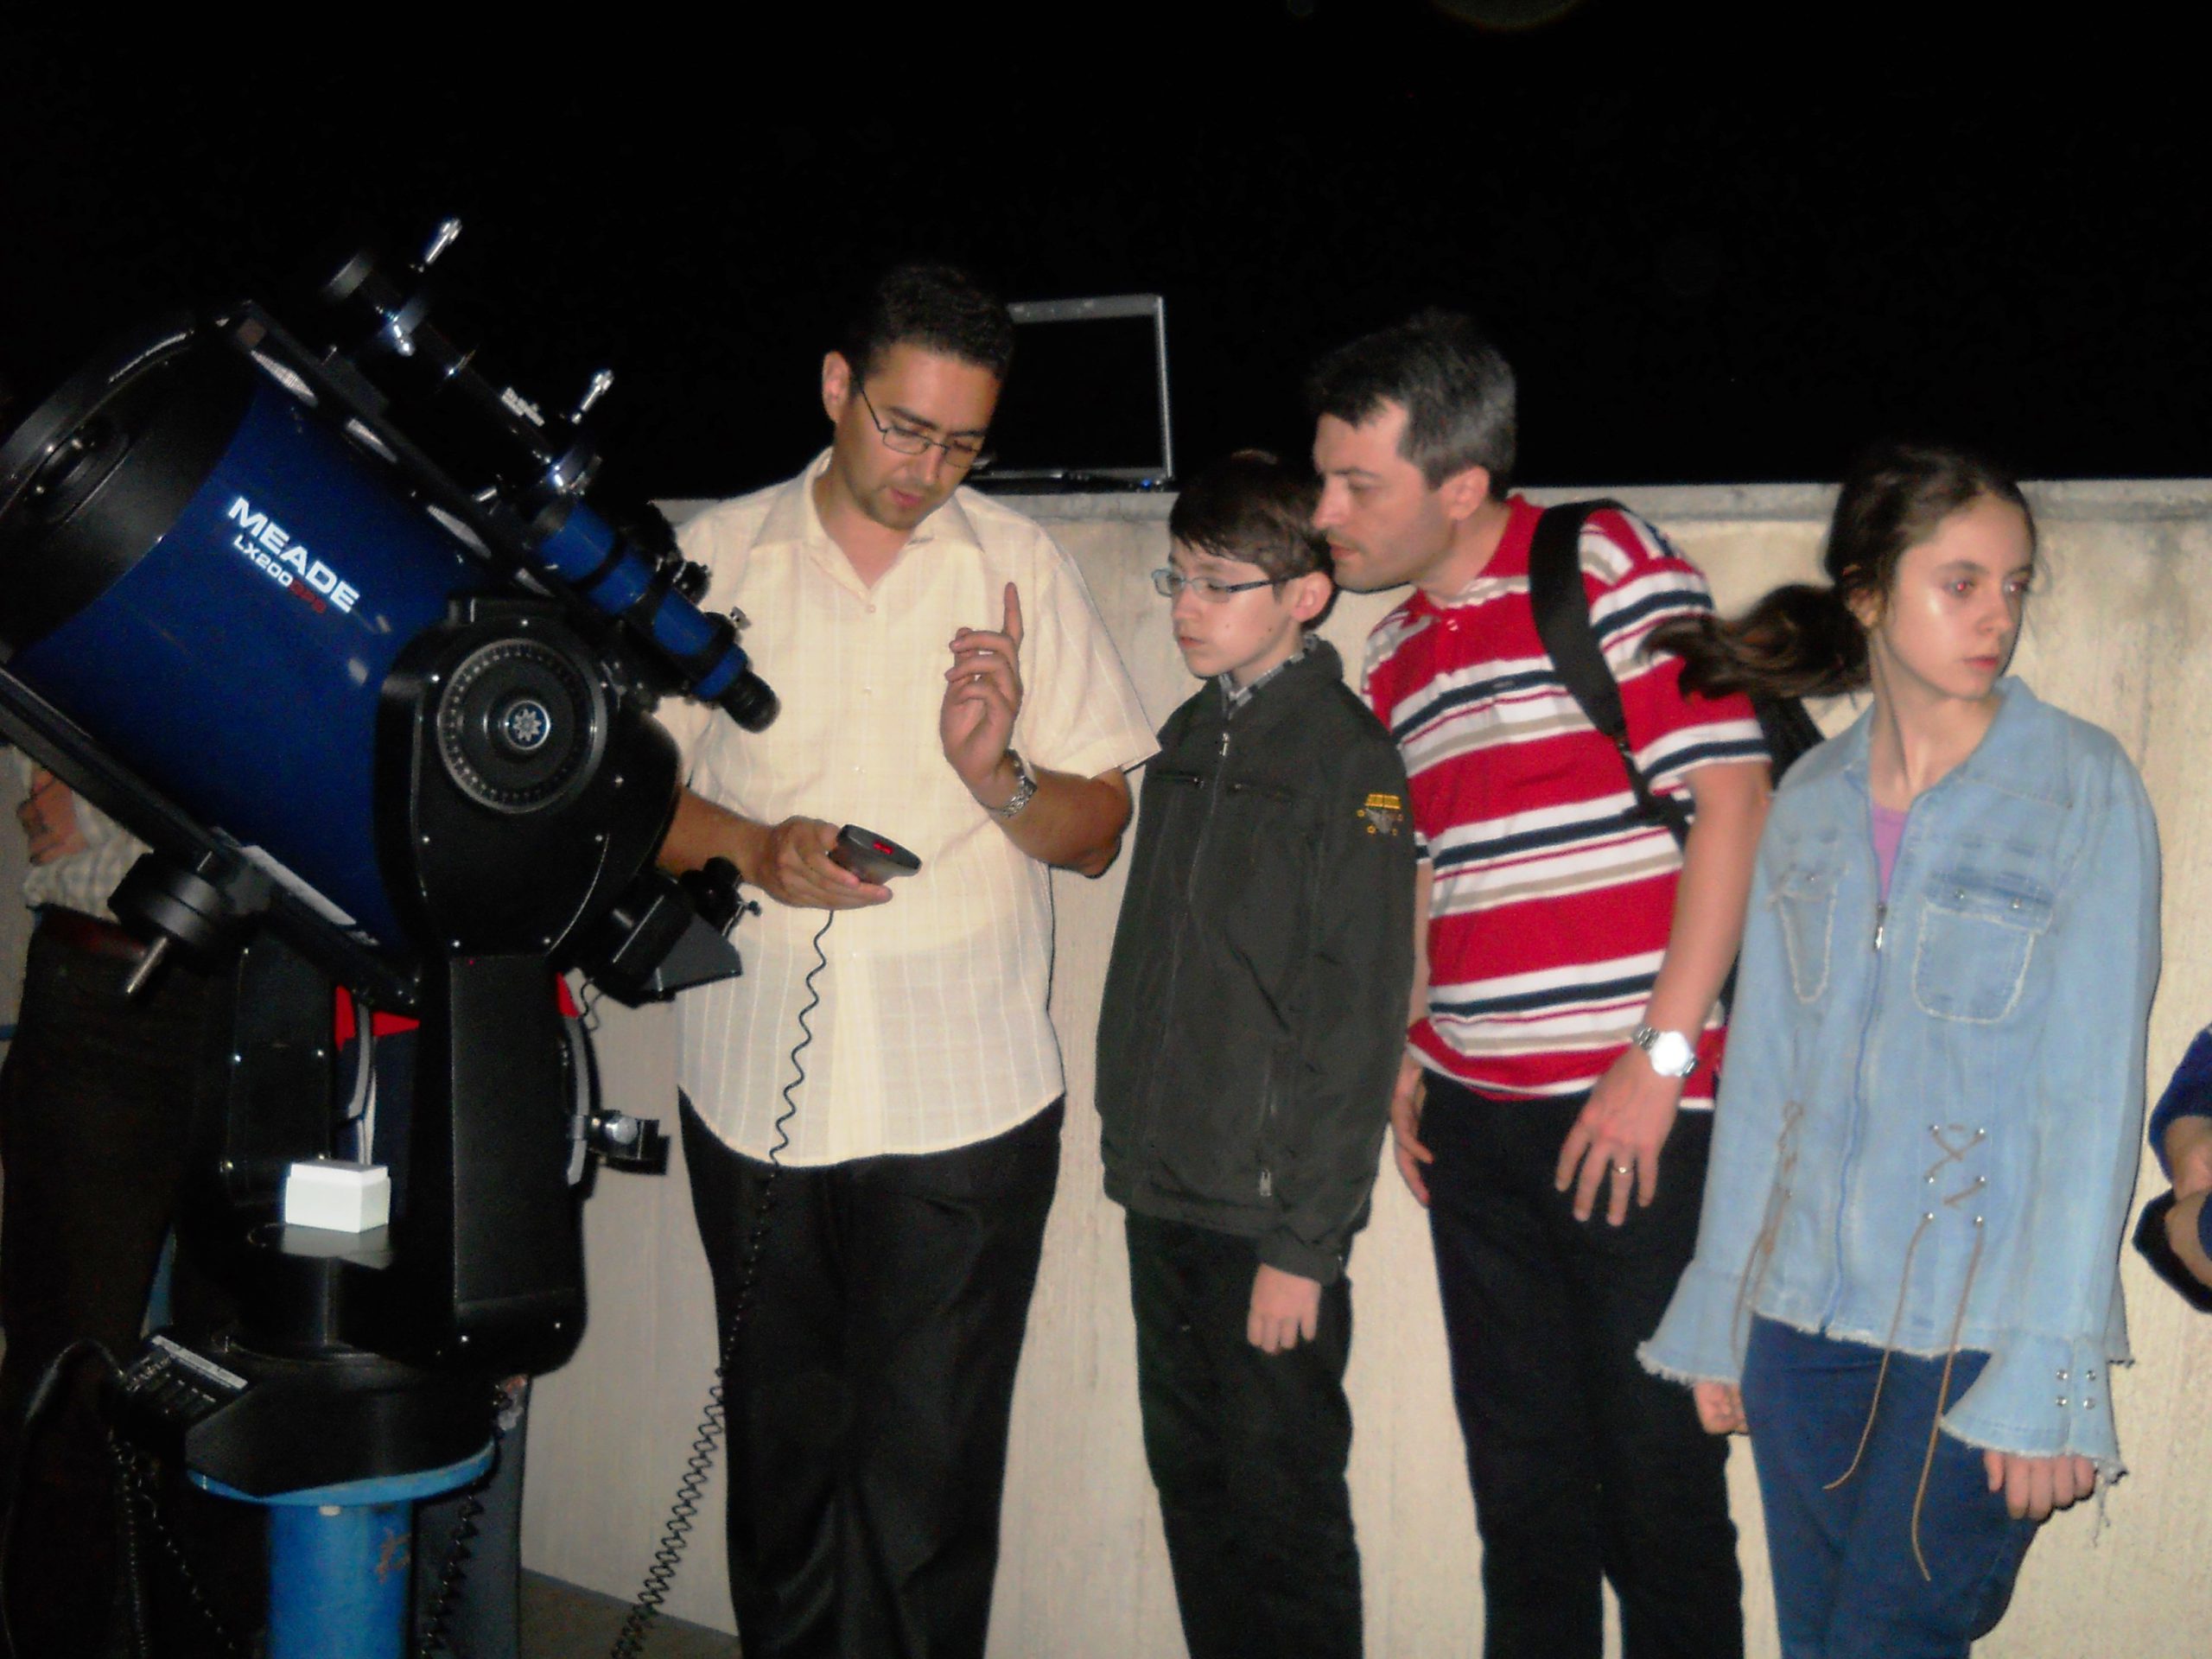  Inedit club de astronomie la Deleni: se deschide poimâine. Urmează alte comune